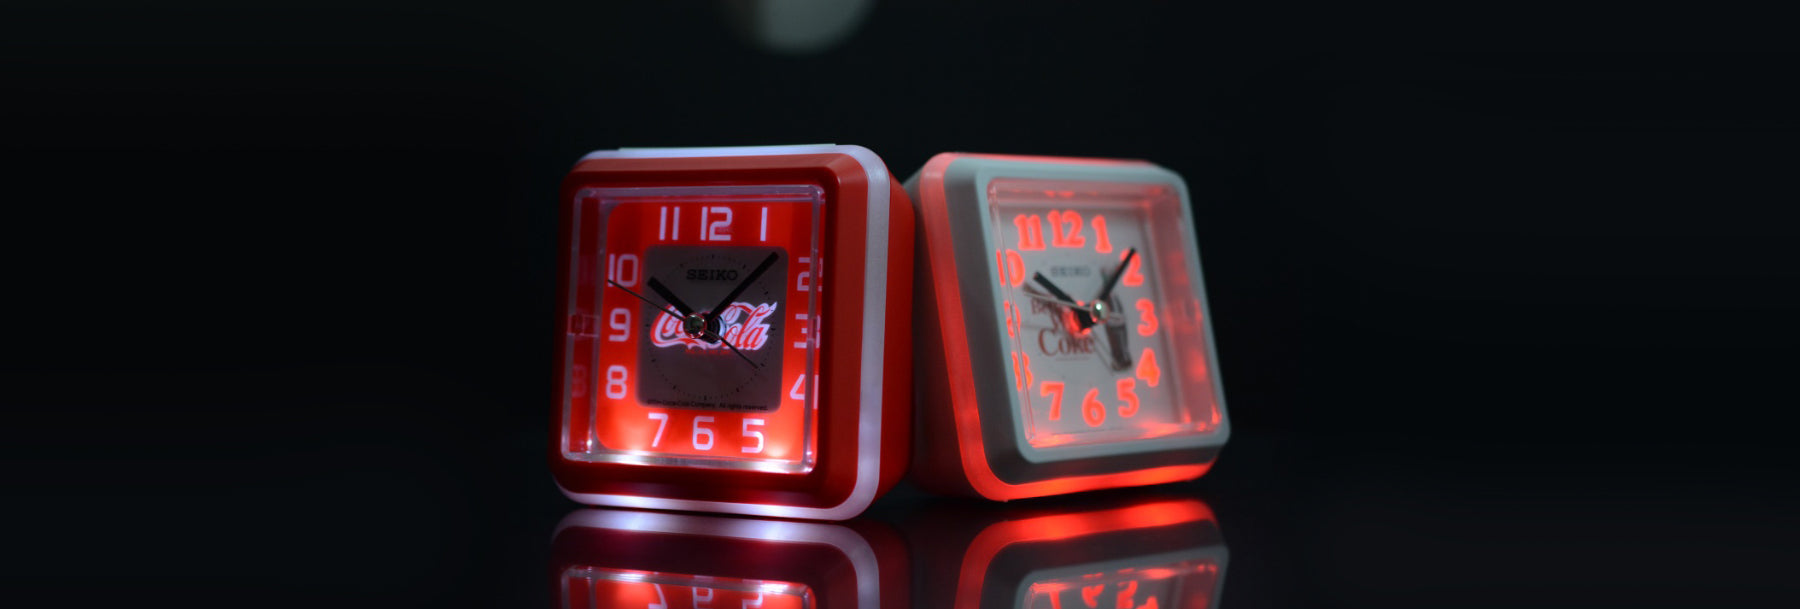 Seiko Clocks Corporate Gifting